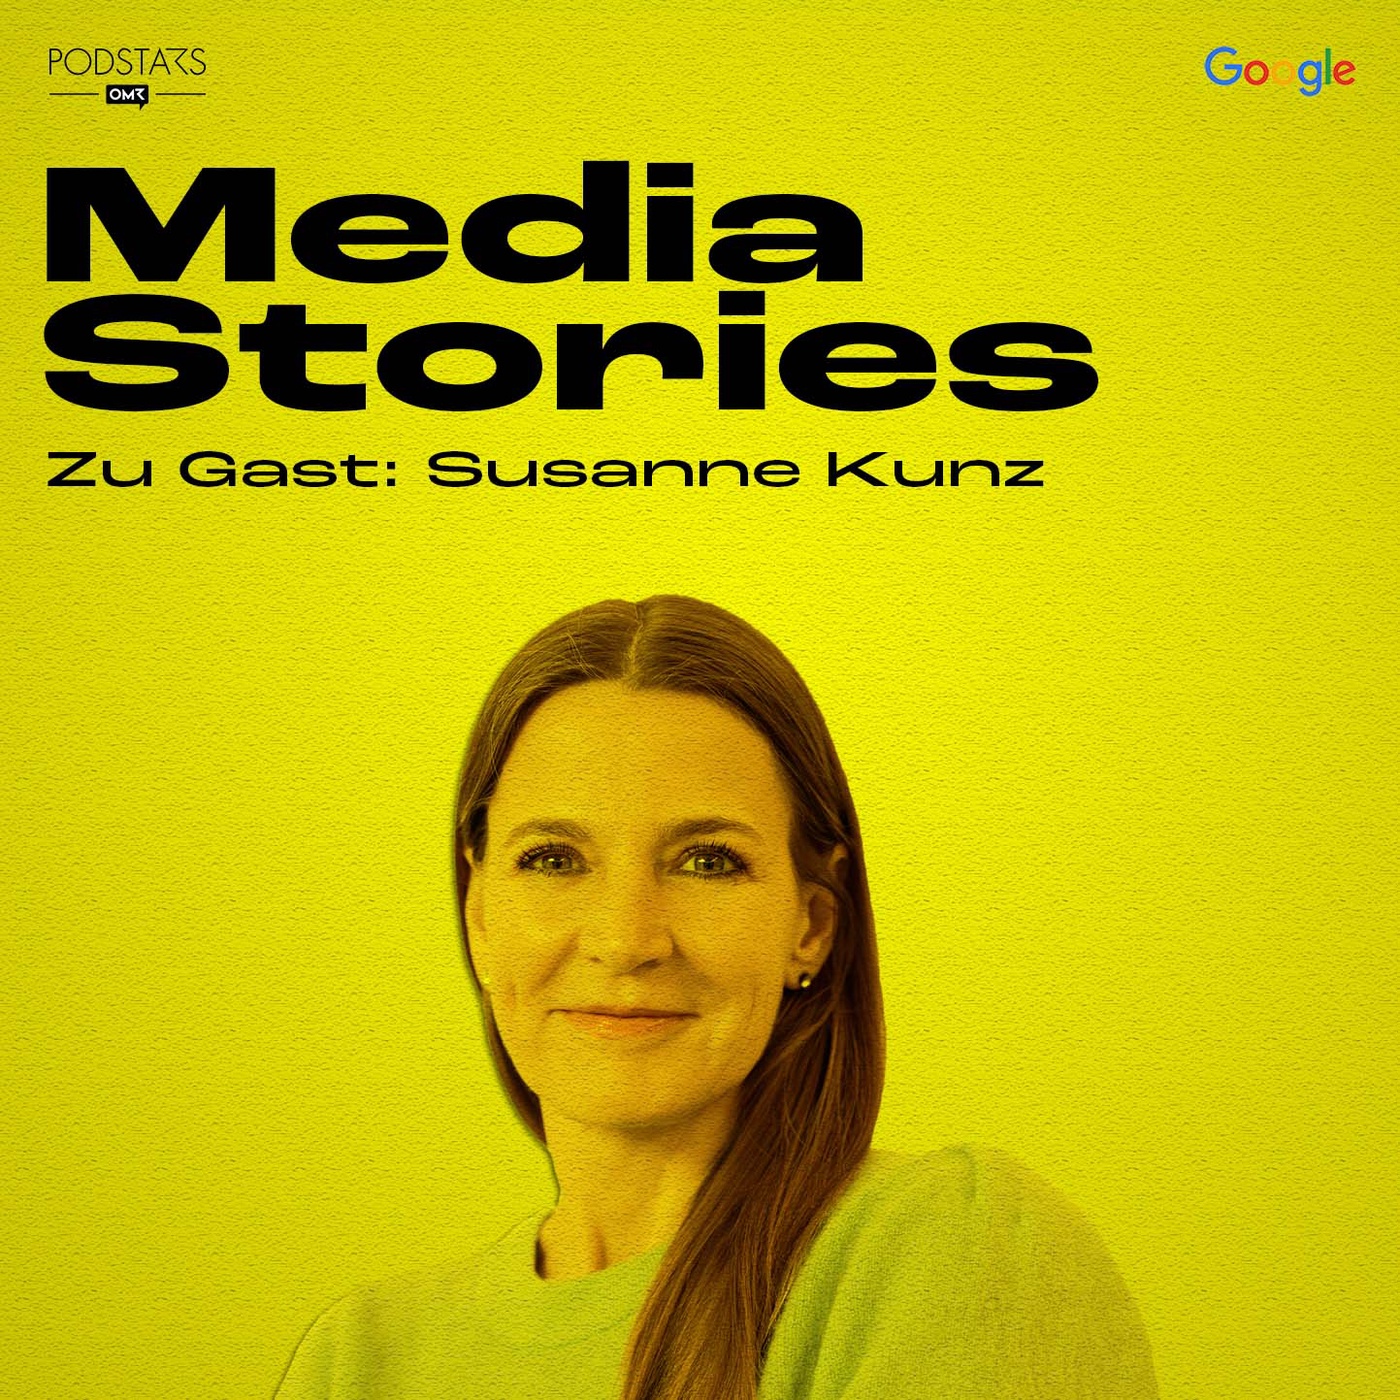 Die Finanzierung des Journalismus als wichtigste Säule – mit Susanne Kunz von der OWM